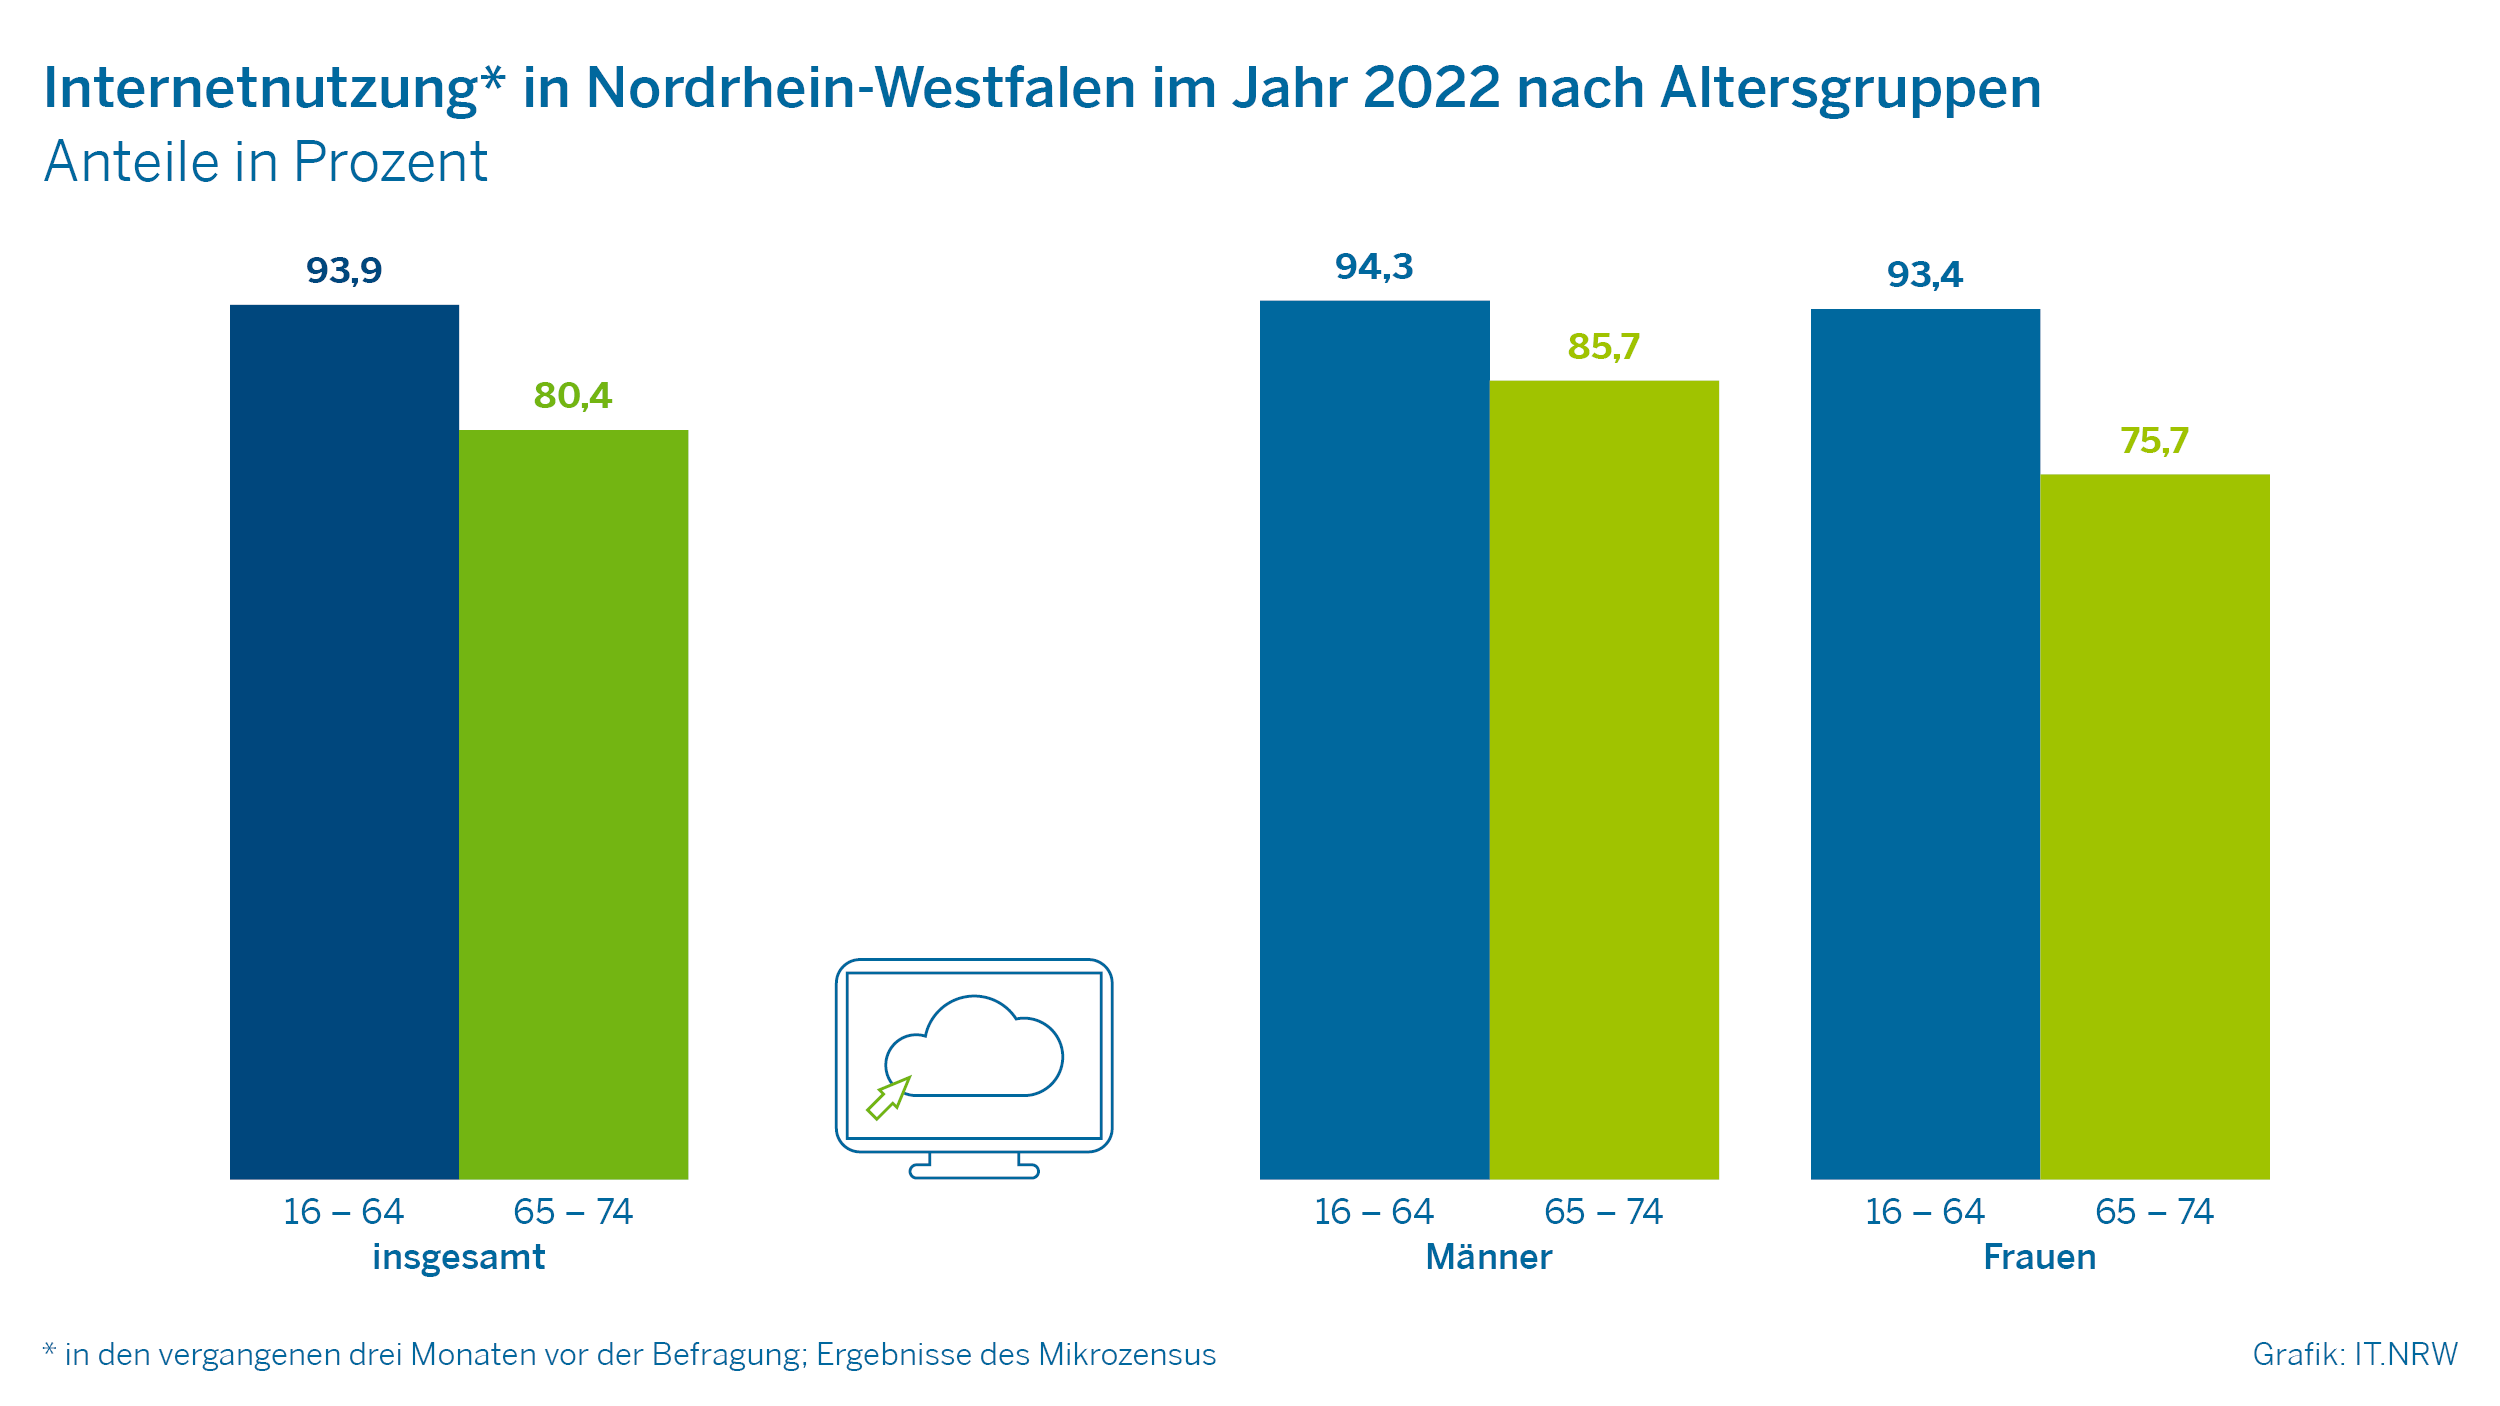 Internetnutzung in Nordrhein-Westfalen im Jahr 2022 nach Altersgruppen